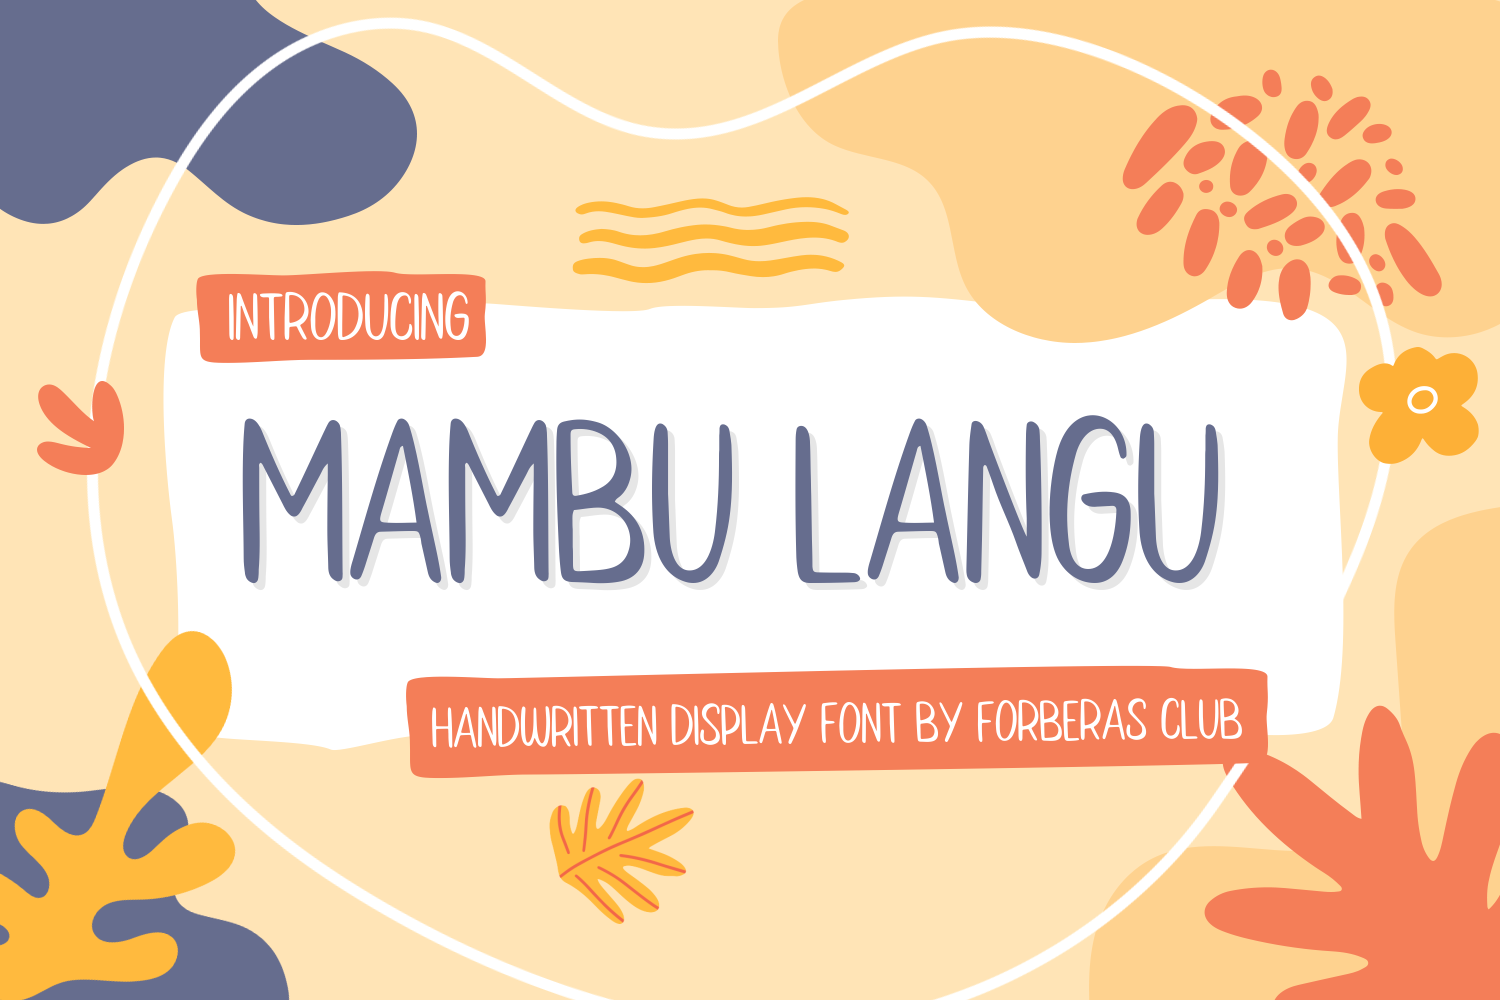 Mambu Langu Free Font